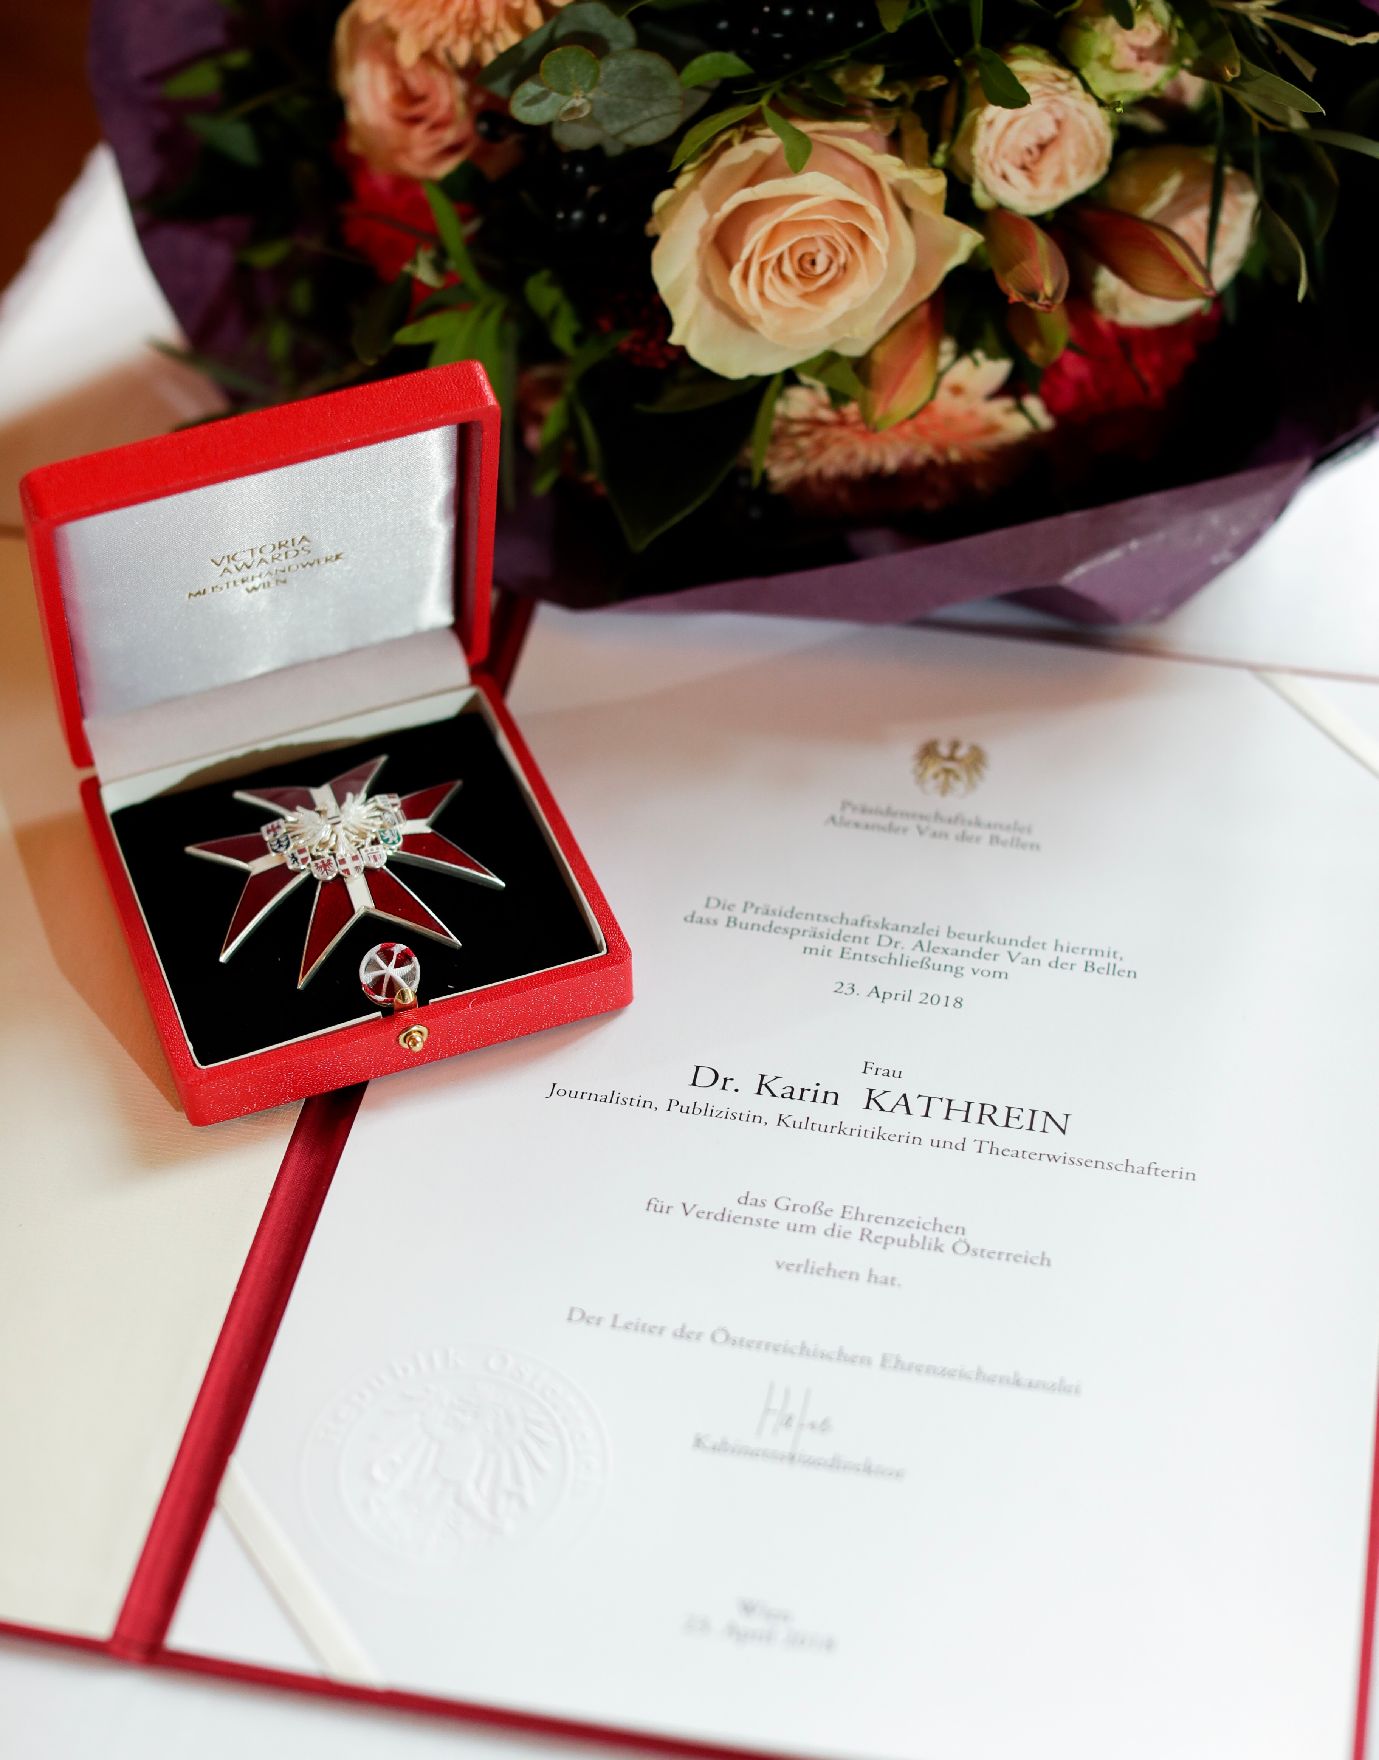 Am 7. November 2018 überreichte Sektionschef Jürgen Meindl das Große Ehrenzeichen für Verdienste um die Republik Österreich an Karin Kathrein und die Urkunde über die Verleihung des Berufstitels Professor an Stephan-Matthias Lademann.